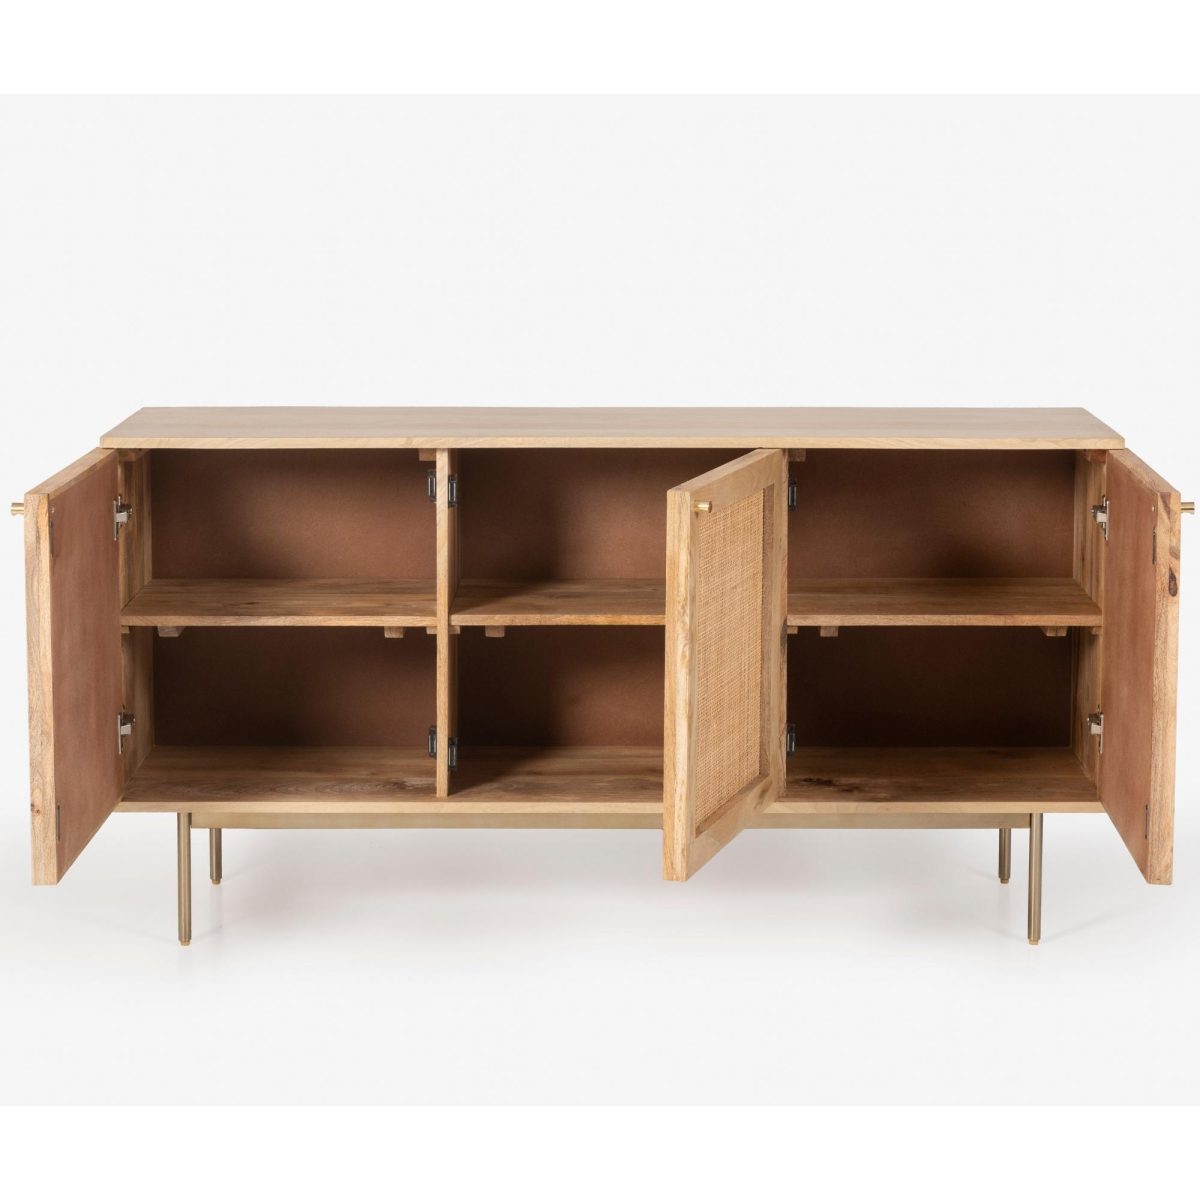 Martina Buffet Table Sideboard Door Solid Mango Wood Storage Cabinet – 145x40x75 cm